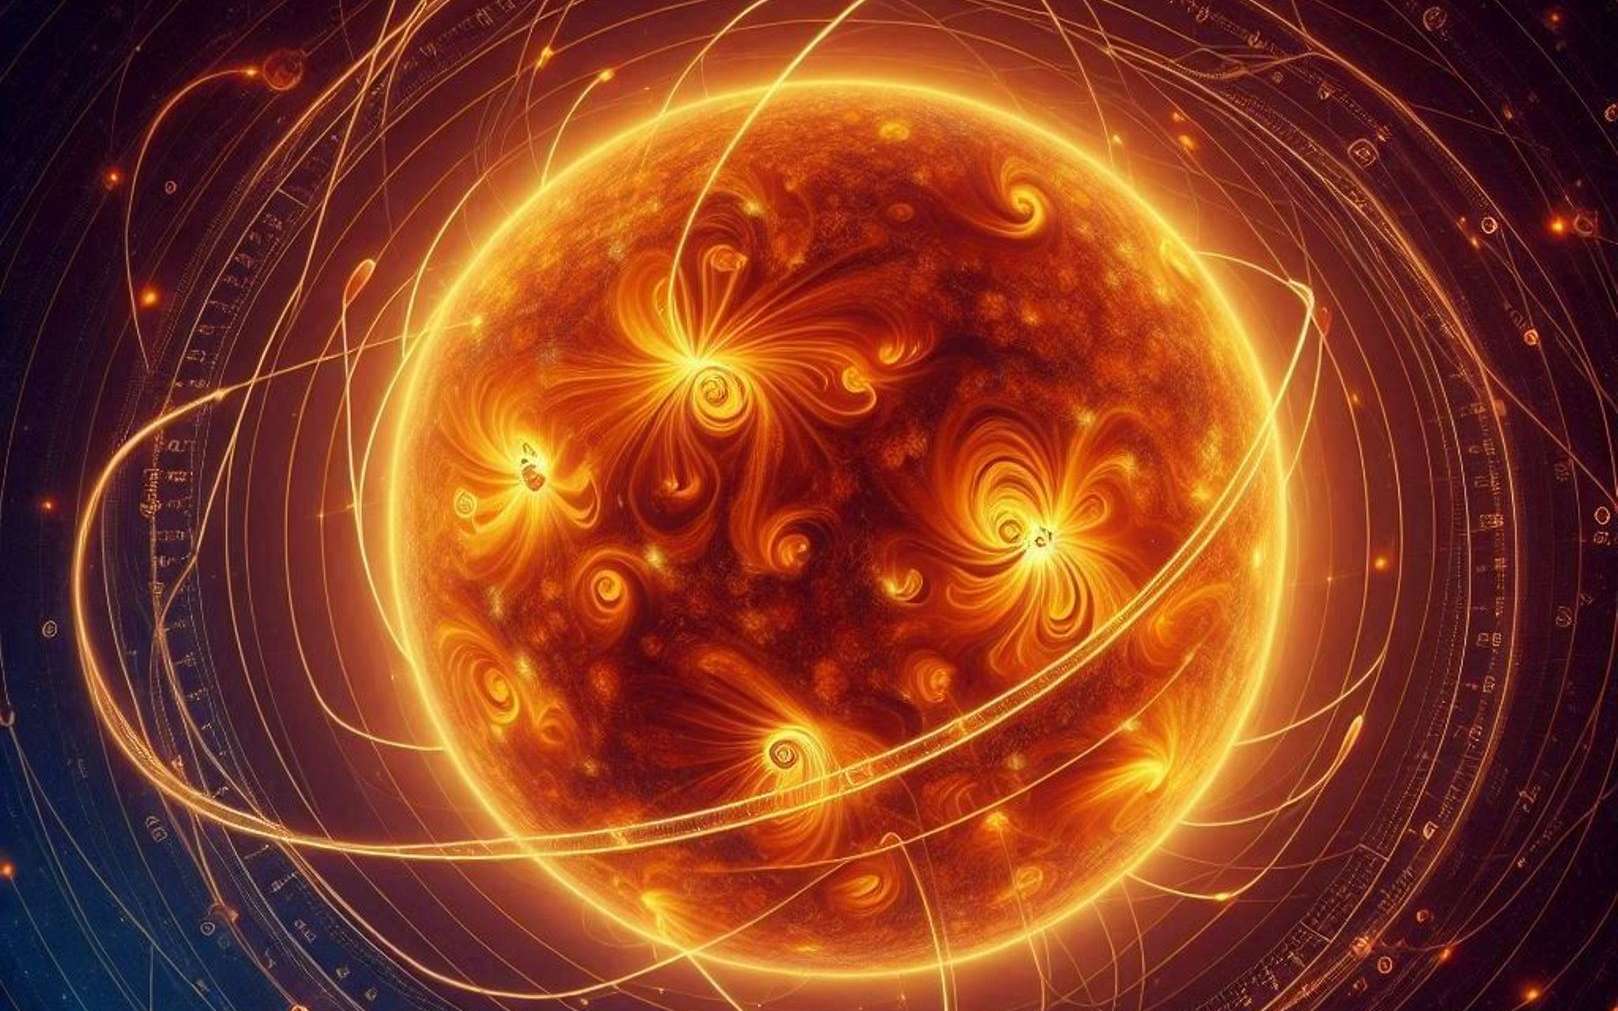 Le cycle des taches solaires serait bien piloté par les planètes et des ondes magnétiques